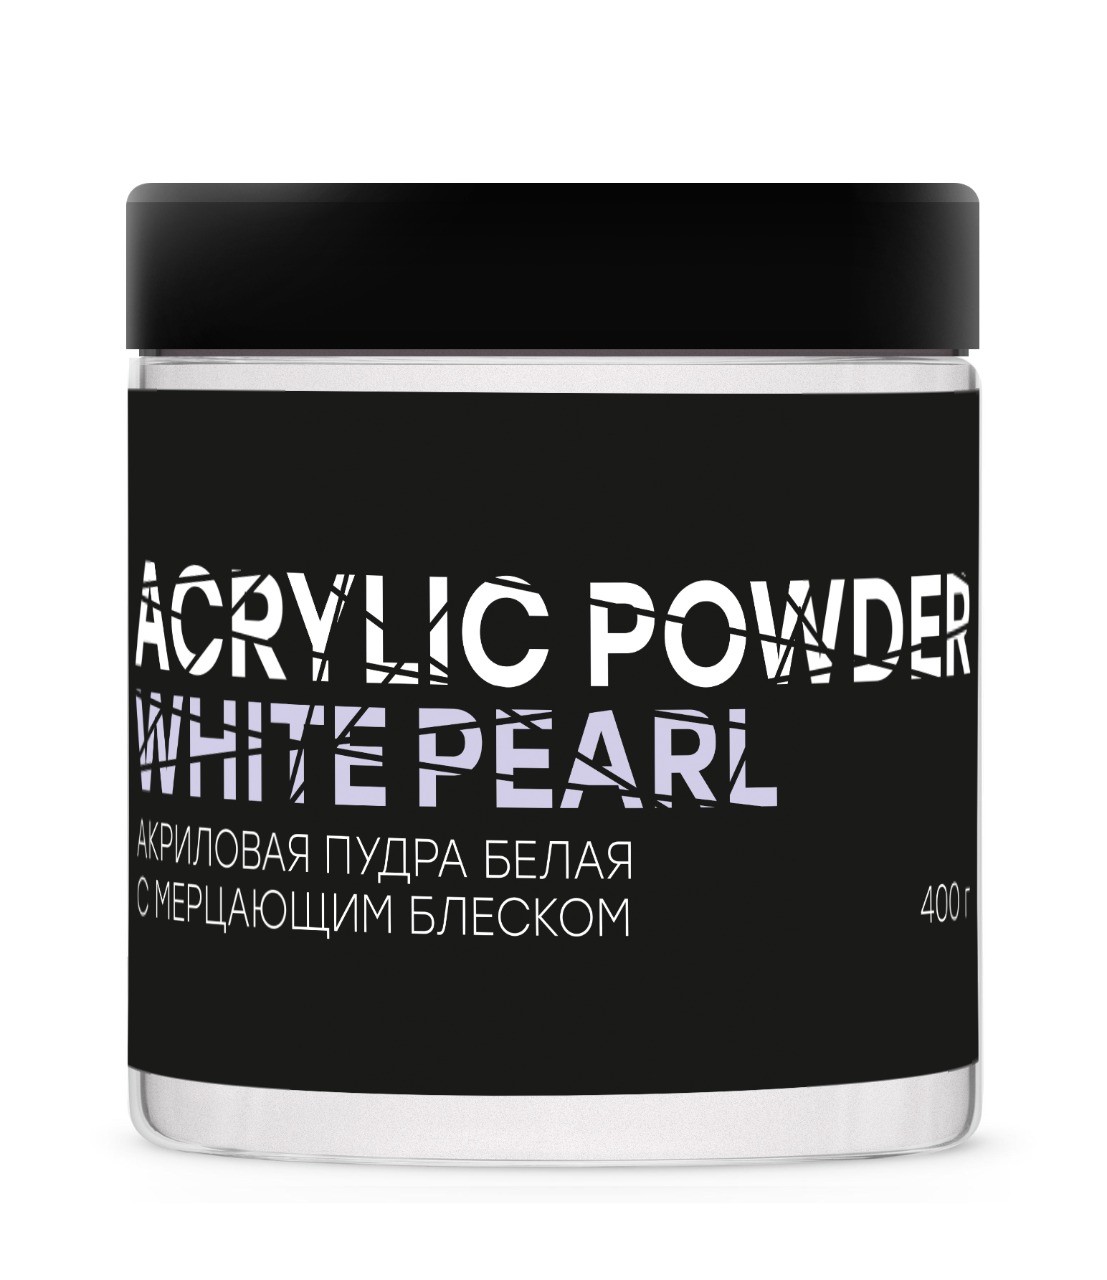 Акриловая пудра InGarden Acrylic Powder Classic White белая, 400 г акриловая пудра белая acrylic powder classic white 100 г